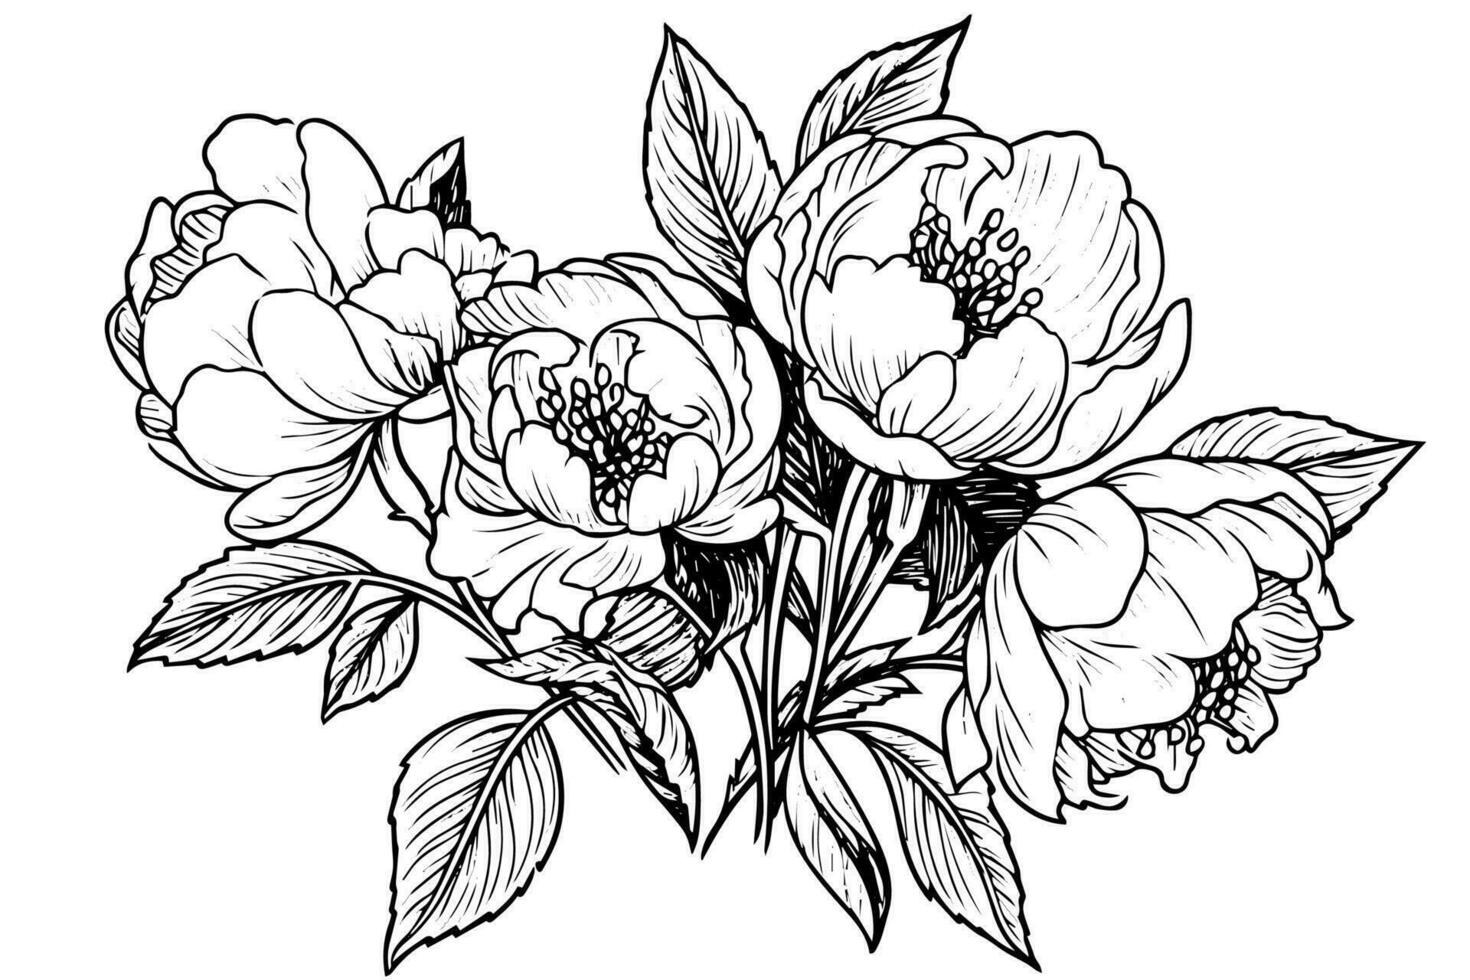 Pfingstrose Blume und Blätter Zeichnung. Vektor Hand gezeichnet graviert Tinte Illustration